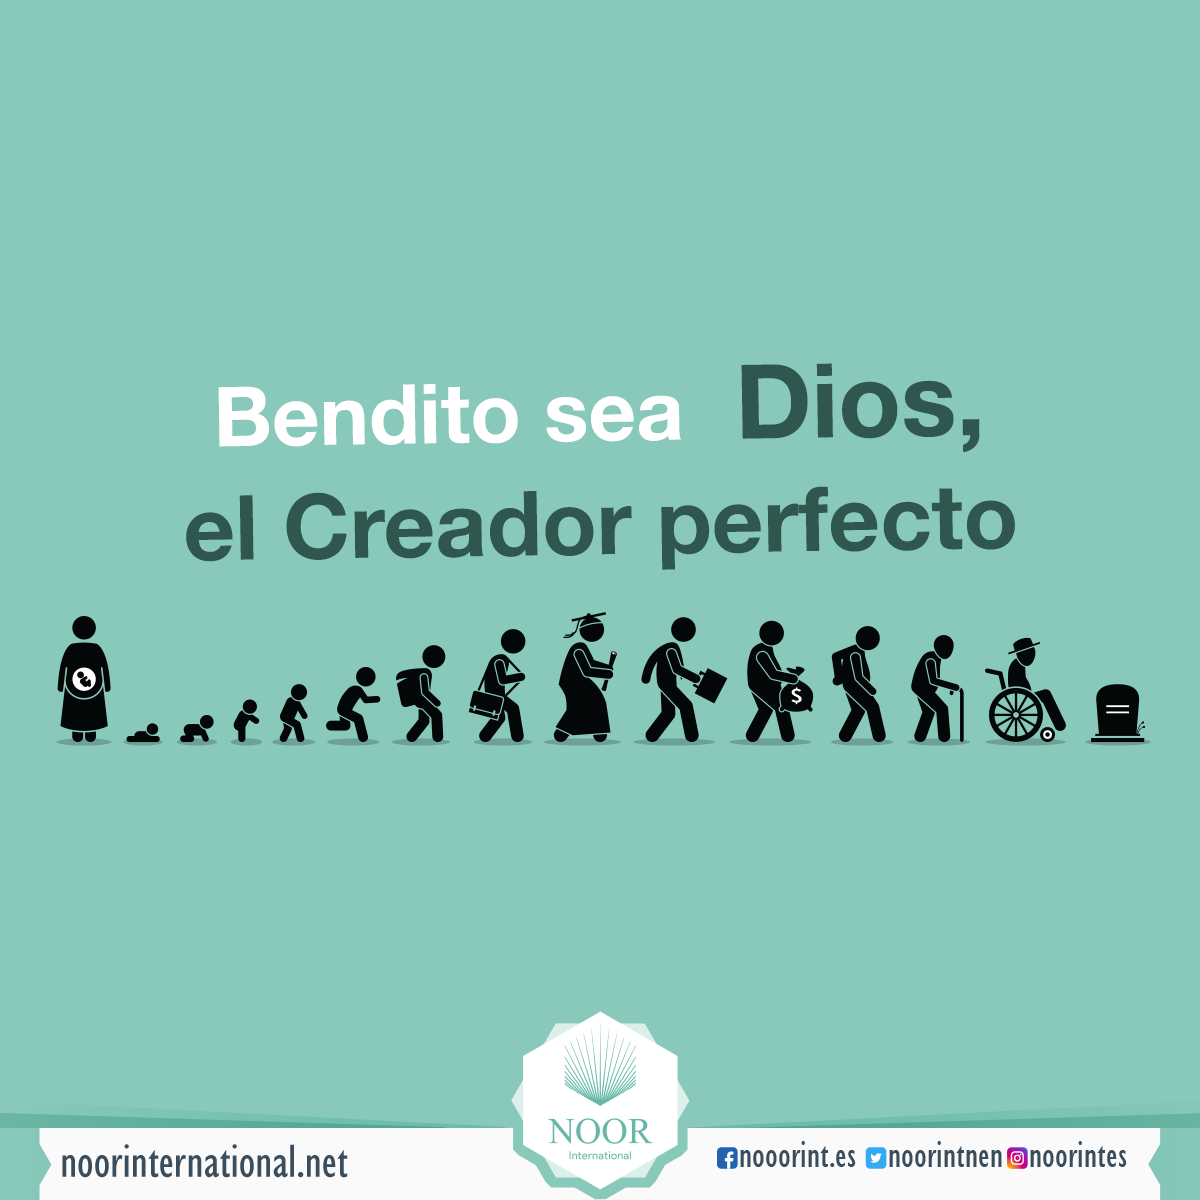 Bendito sea Dios, el Creador perfecto